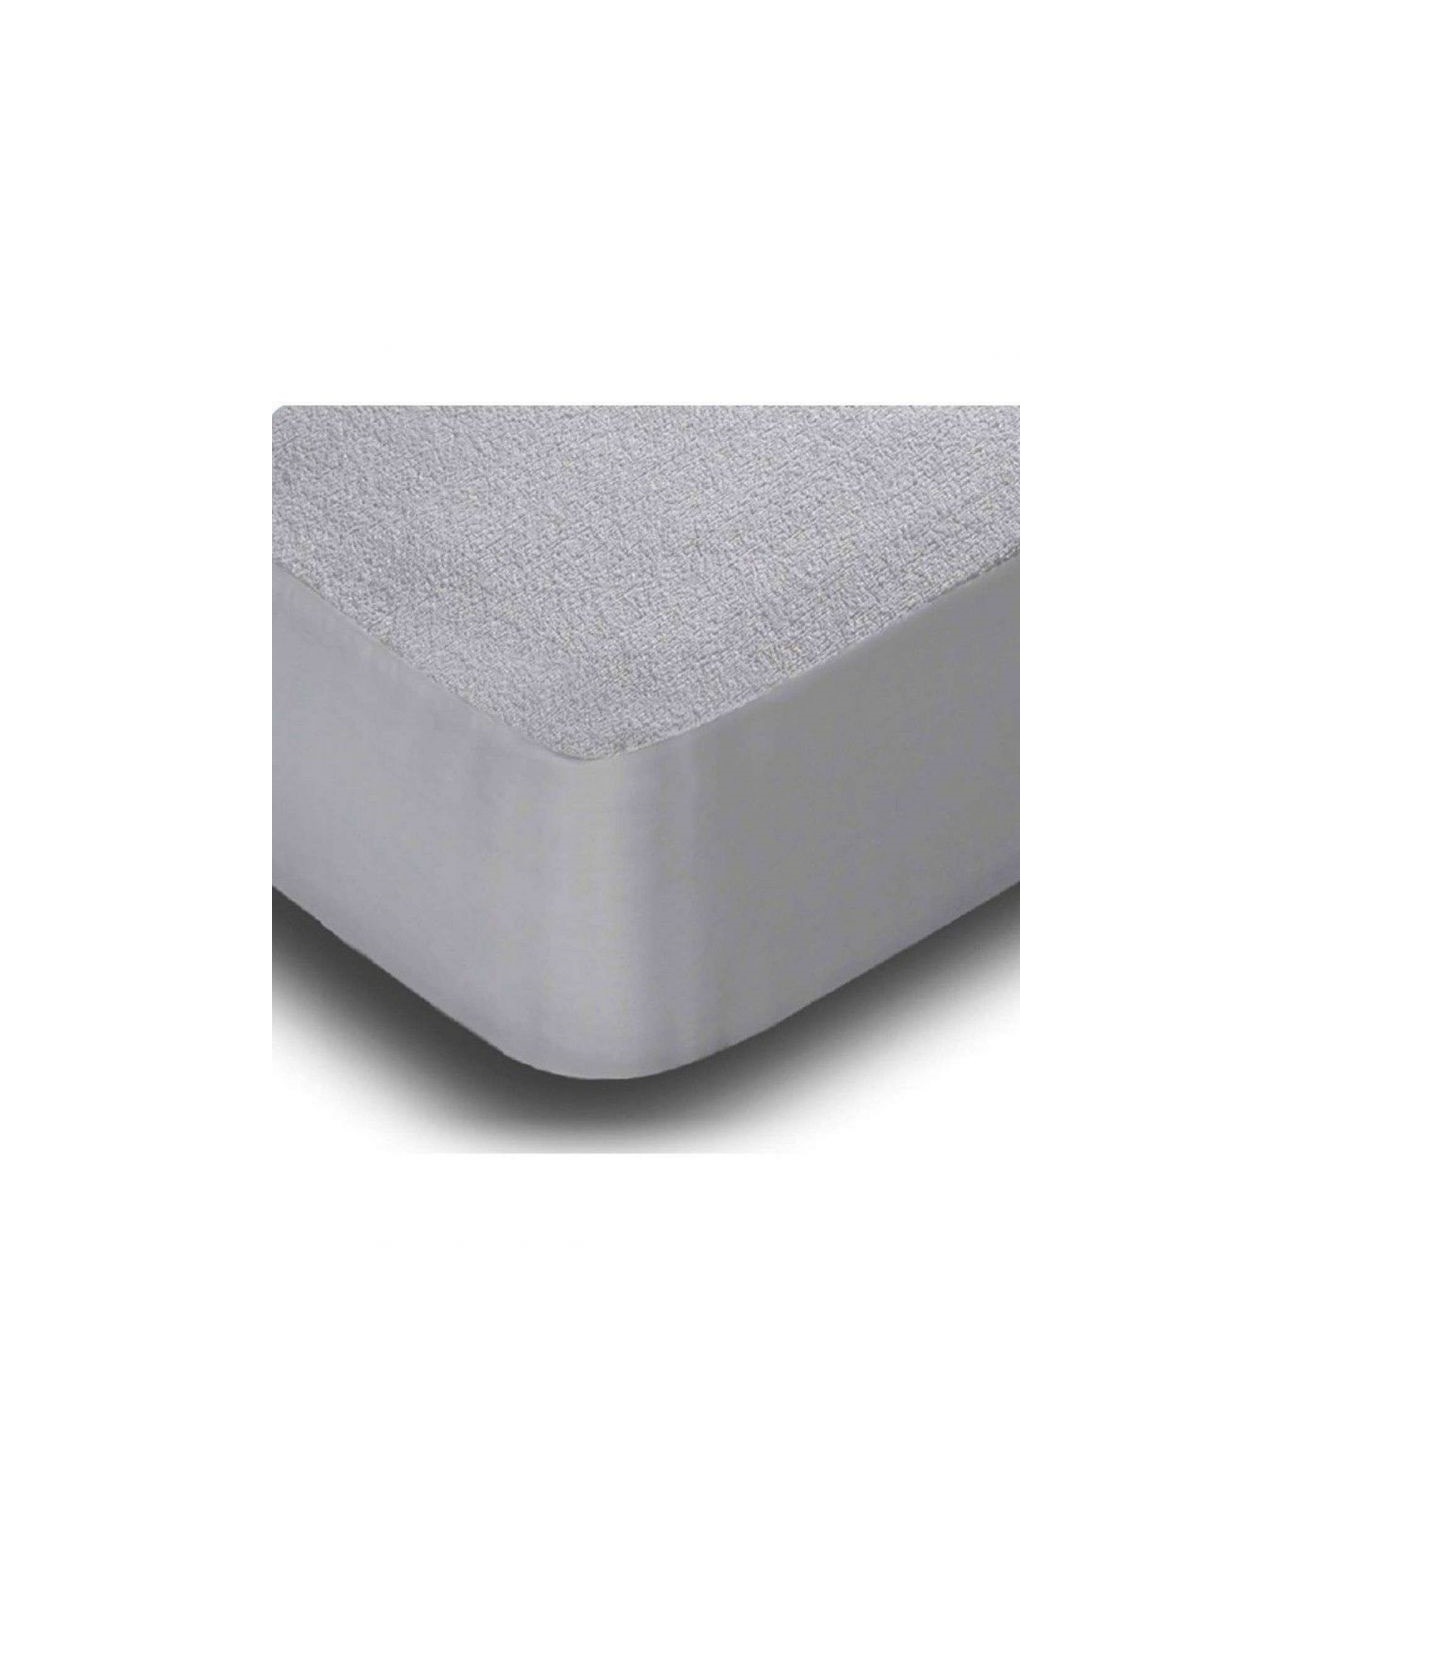 Mattress Elegante Κάλυμμα στρώματος αδιάβροχο (επίστρωμα) 90 x 200 cm + 35 cm